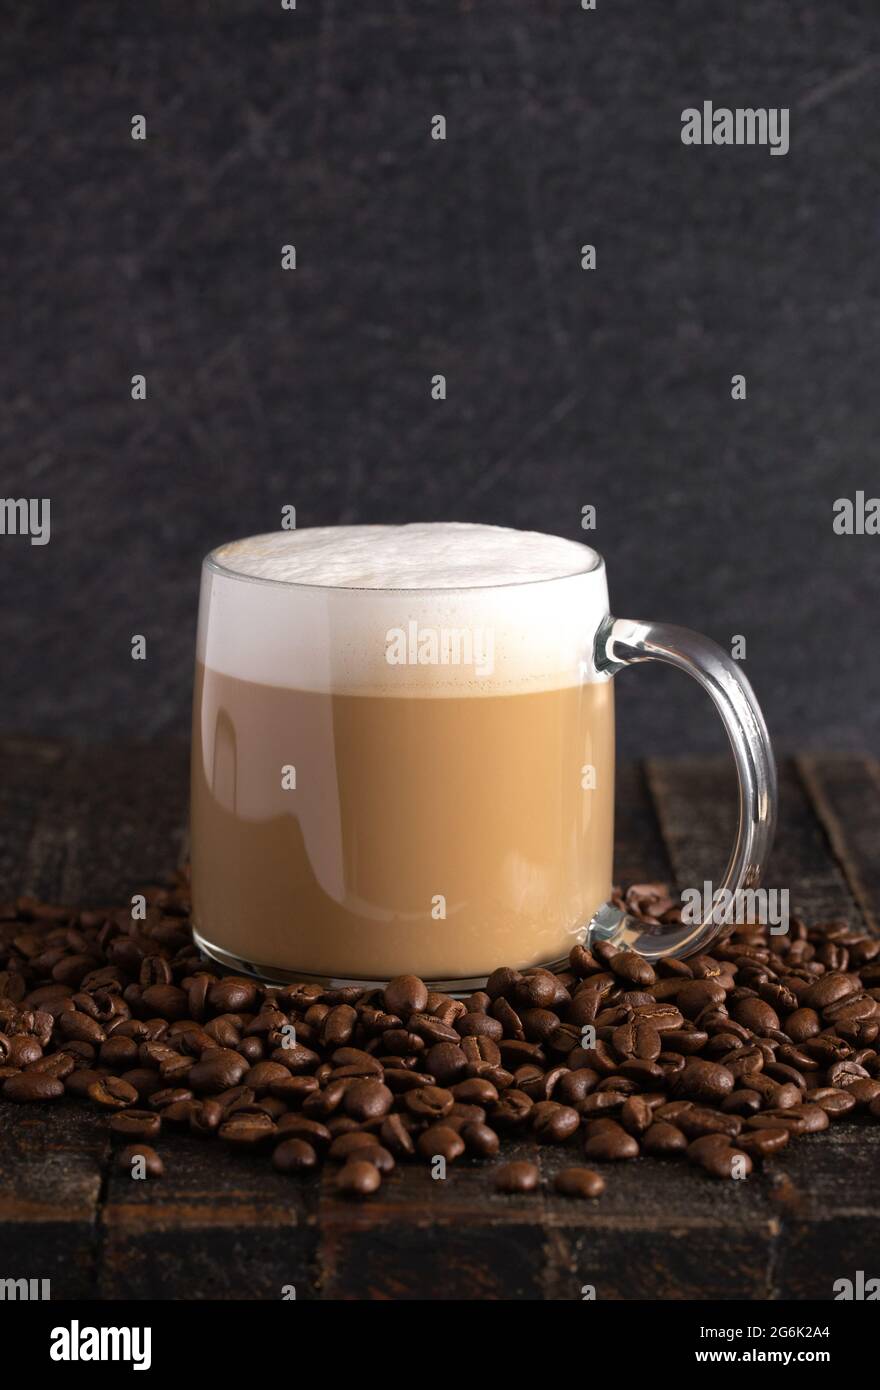 Café con leche en una taza de cristal transparente en un ambiente oscuro  Fotografía de stock - Alamy